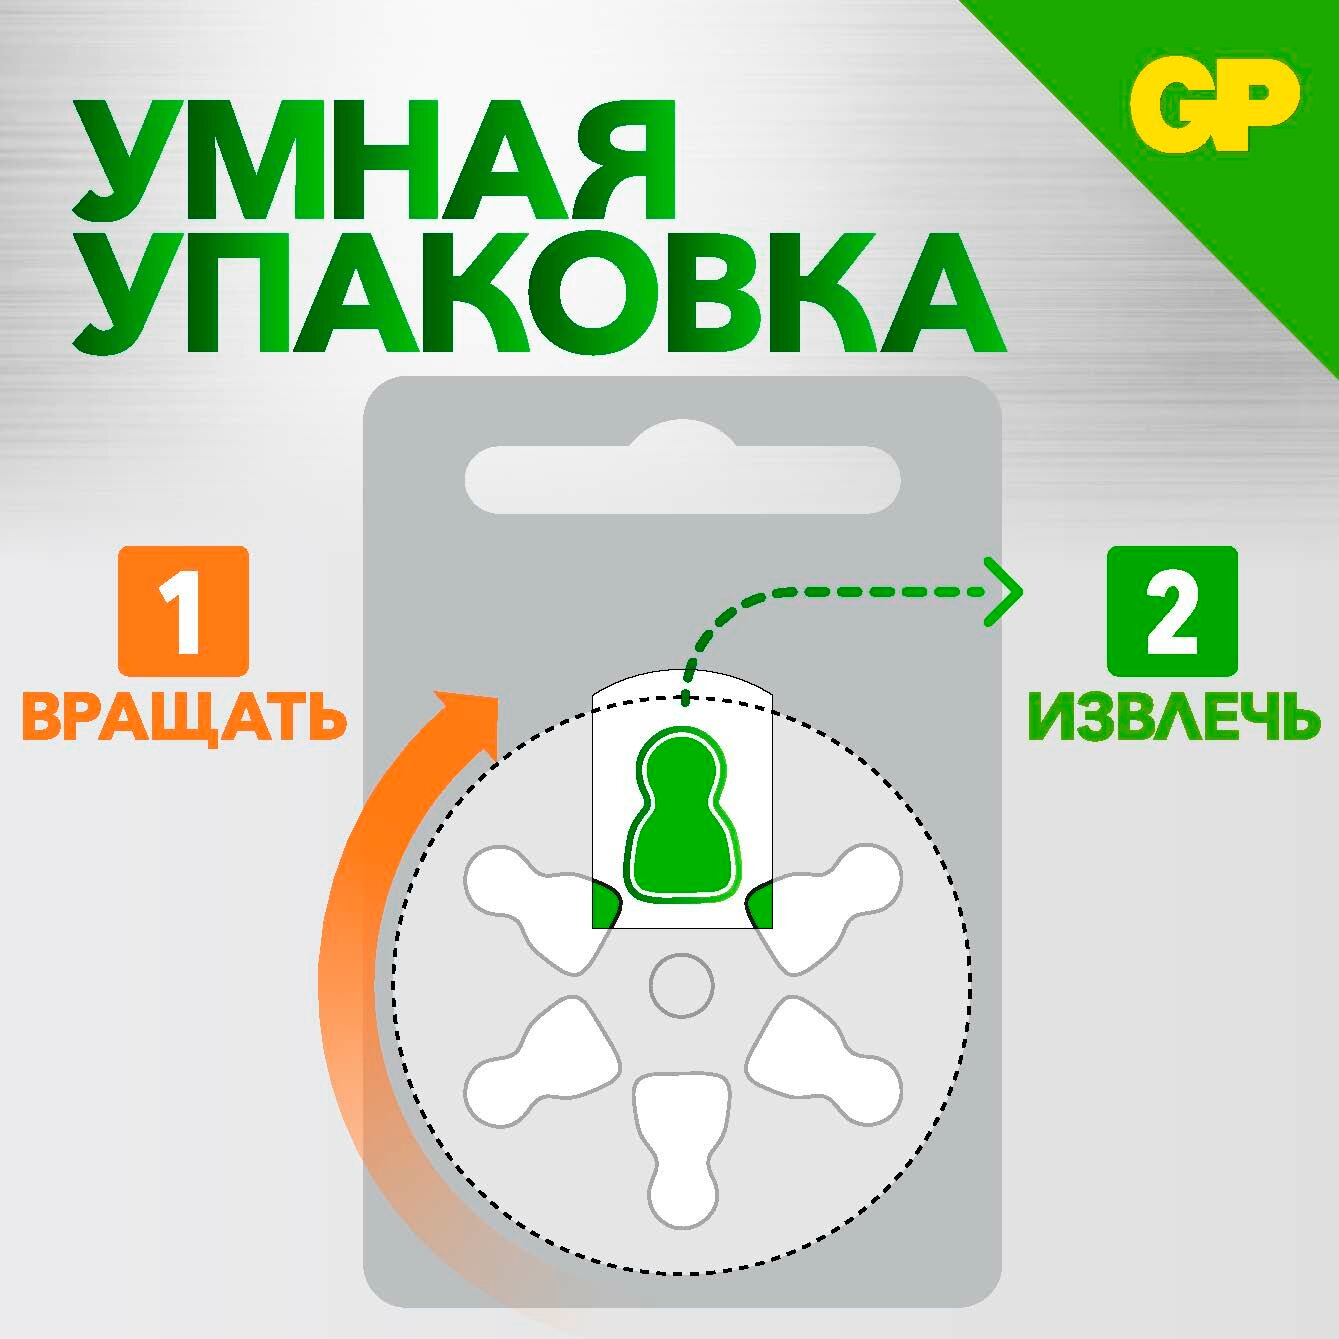 Батарейка GP Hearing Aid ZA13